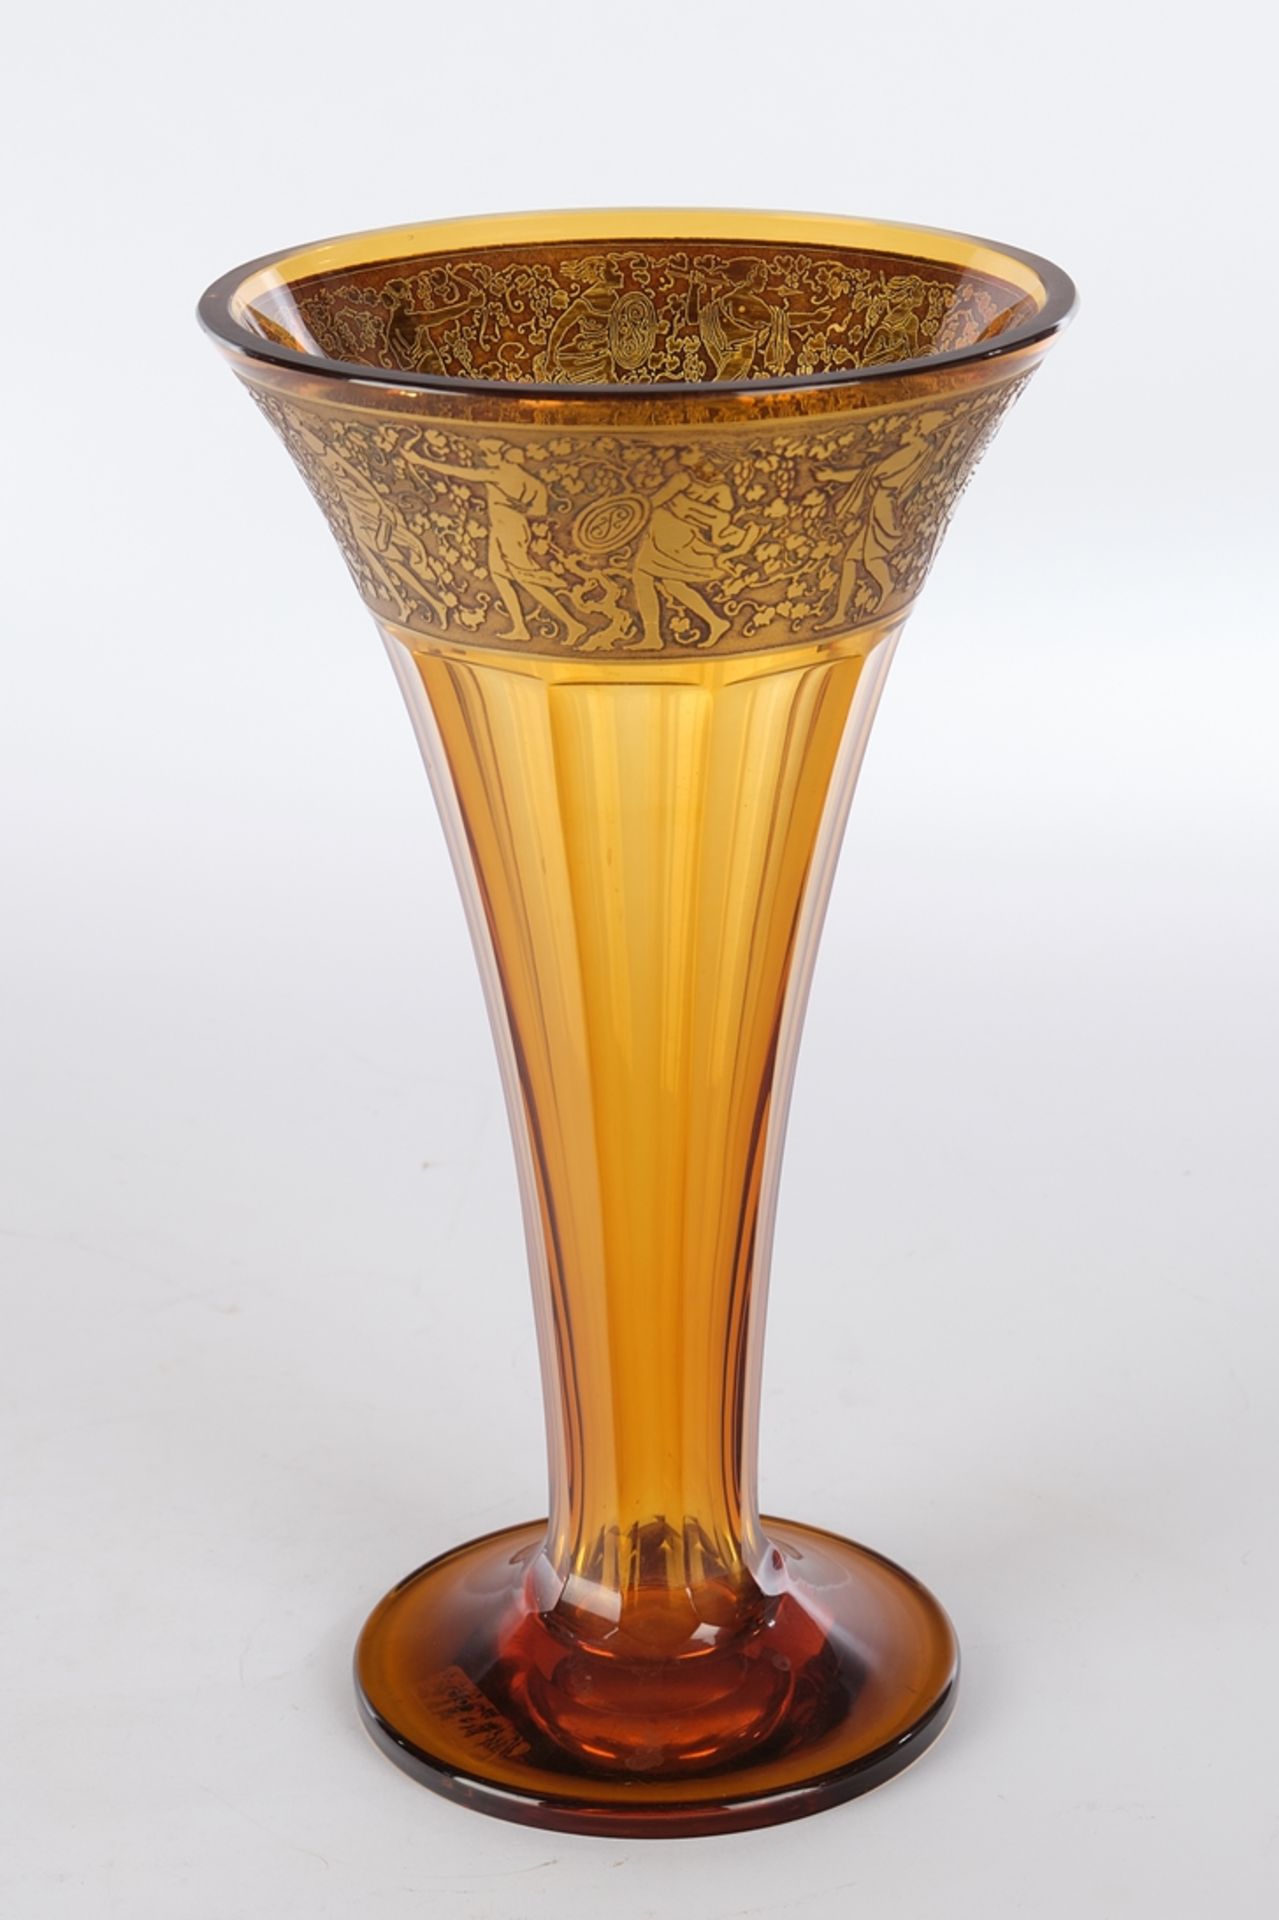 Vase, "Fipop", wohl Moser, Karlsbad, 20. Jh., ungemarkt, bernsteinfarbenes Glas, Trichterform auf R - Bild 2 aus 2